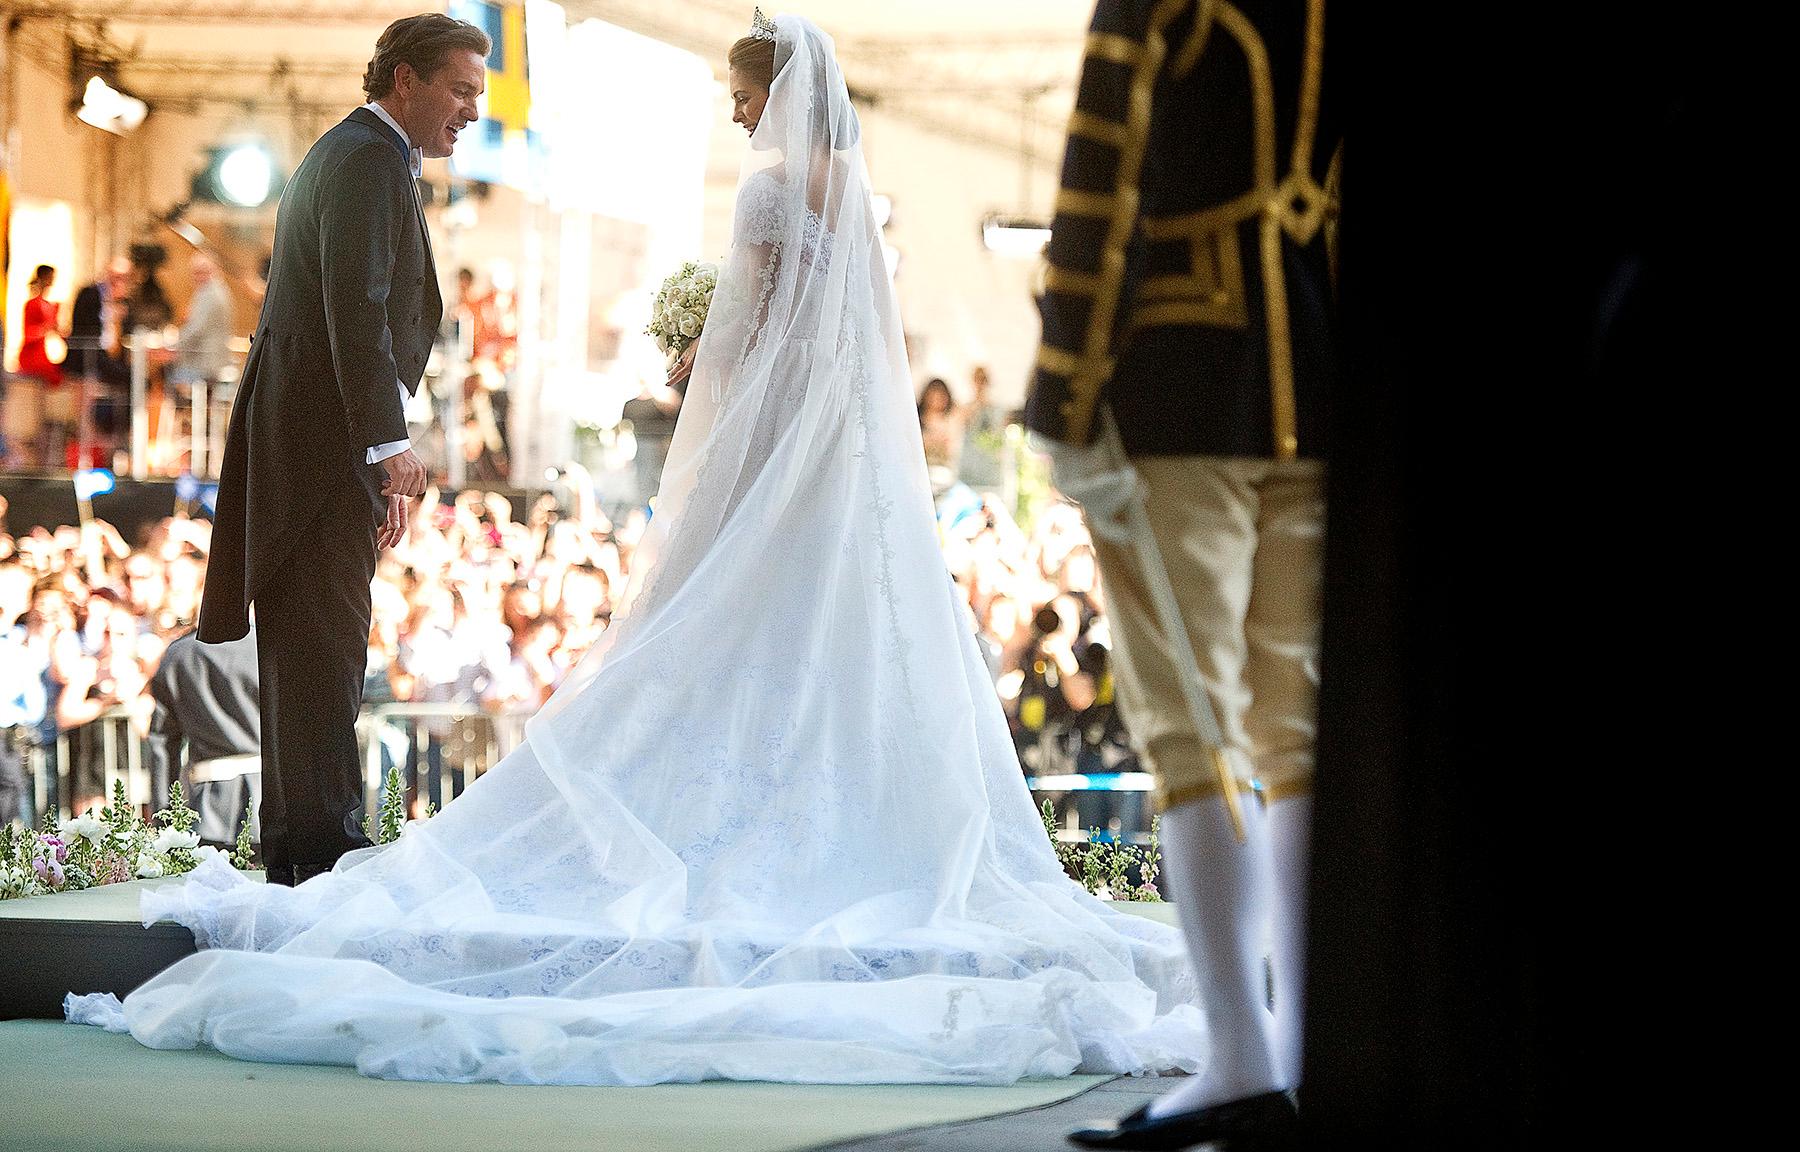 plutokraterna är den nya aristokratin ”Bankman gifter sig med svensk prinsessa” var rubrikerna utomlands om gårdagens bröllop mellan prinsessan Madeleine och Chris O’Neill.